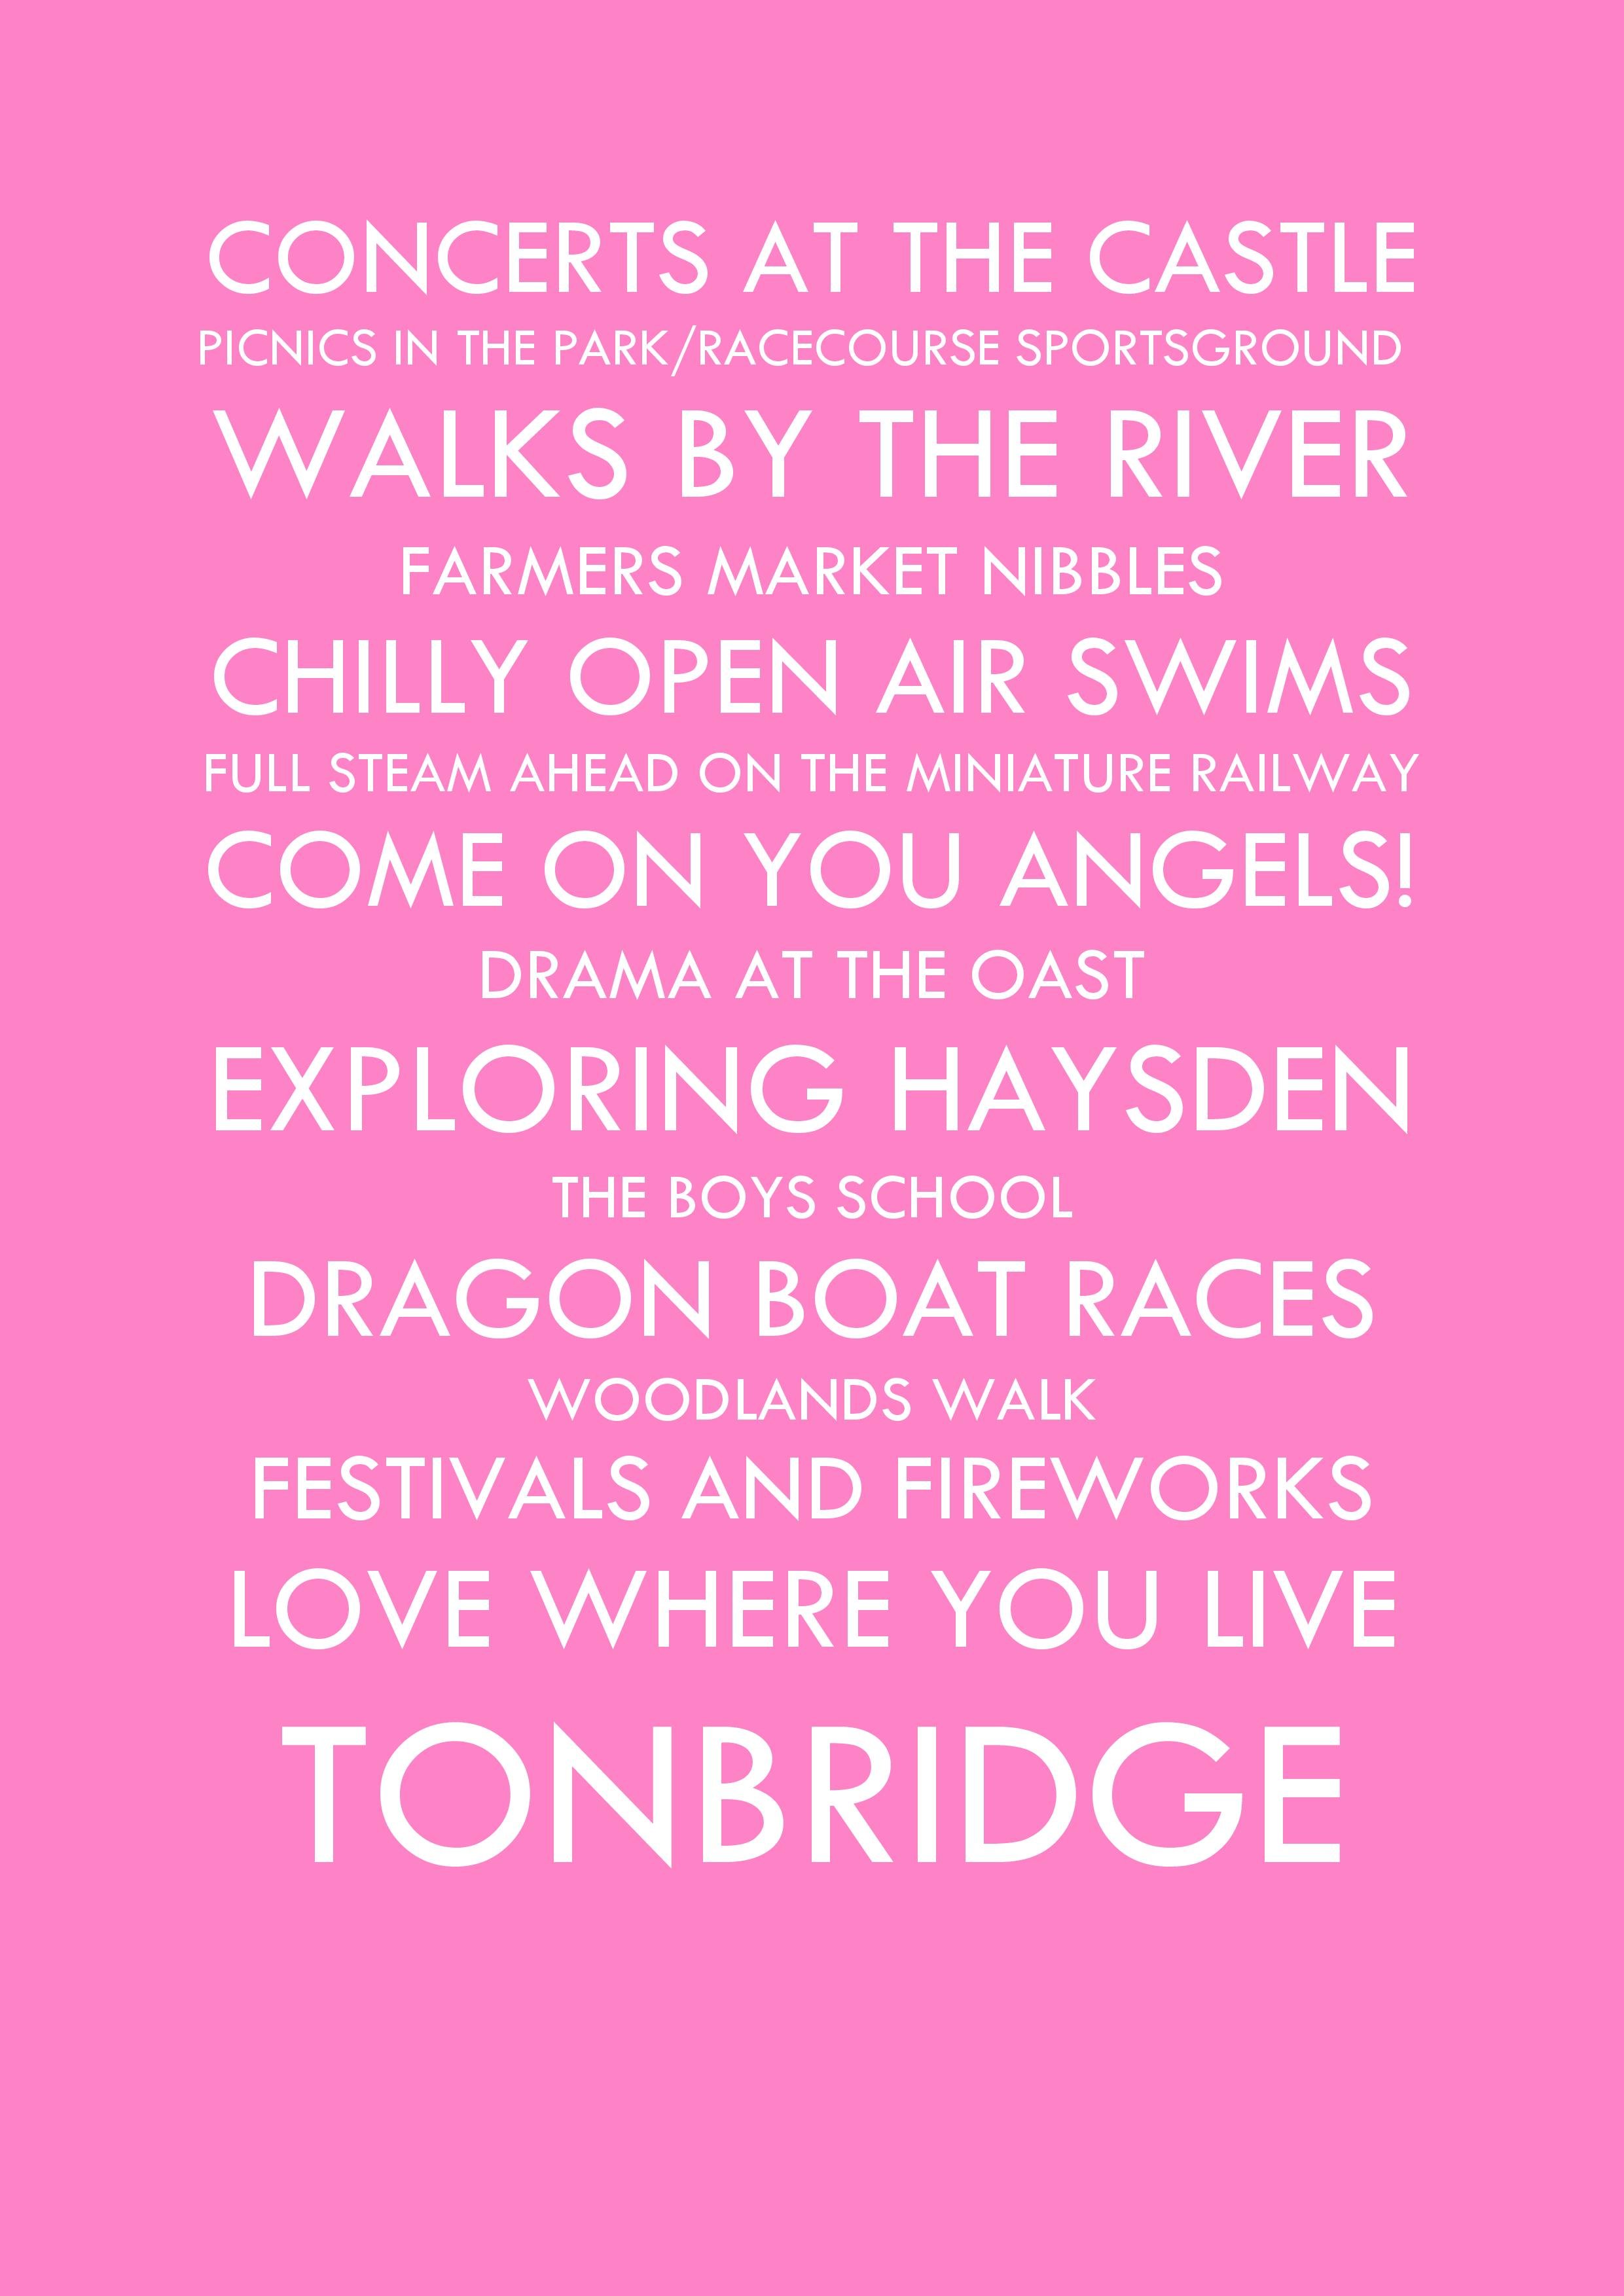 LOVE TONBRIDGE PINK-JPG.jpg